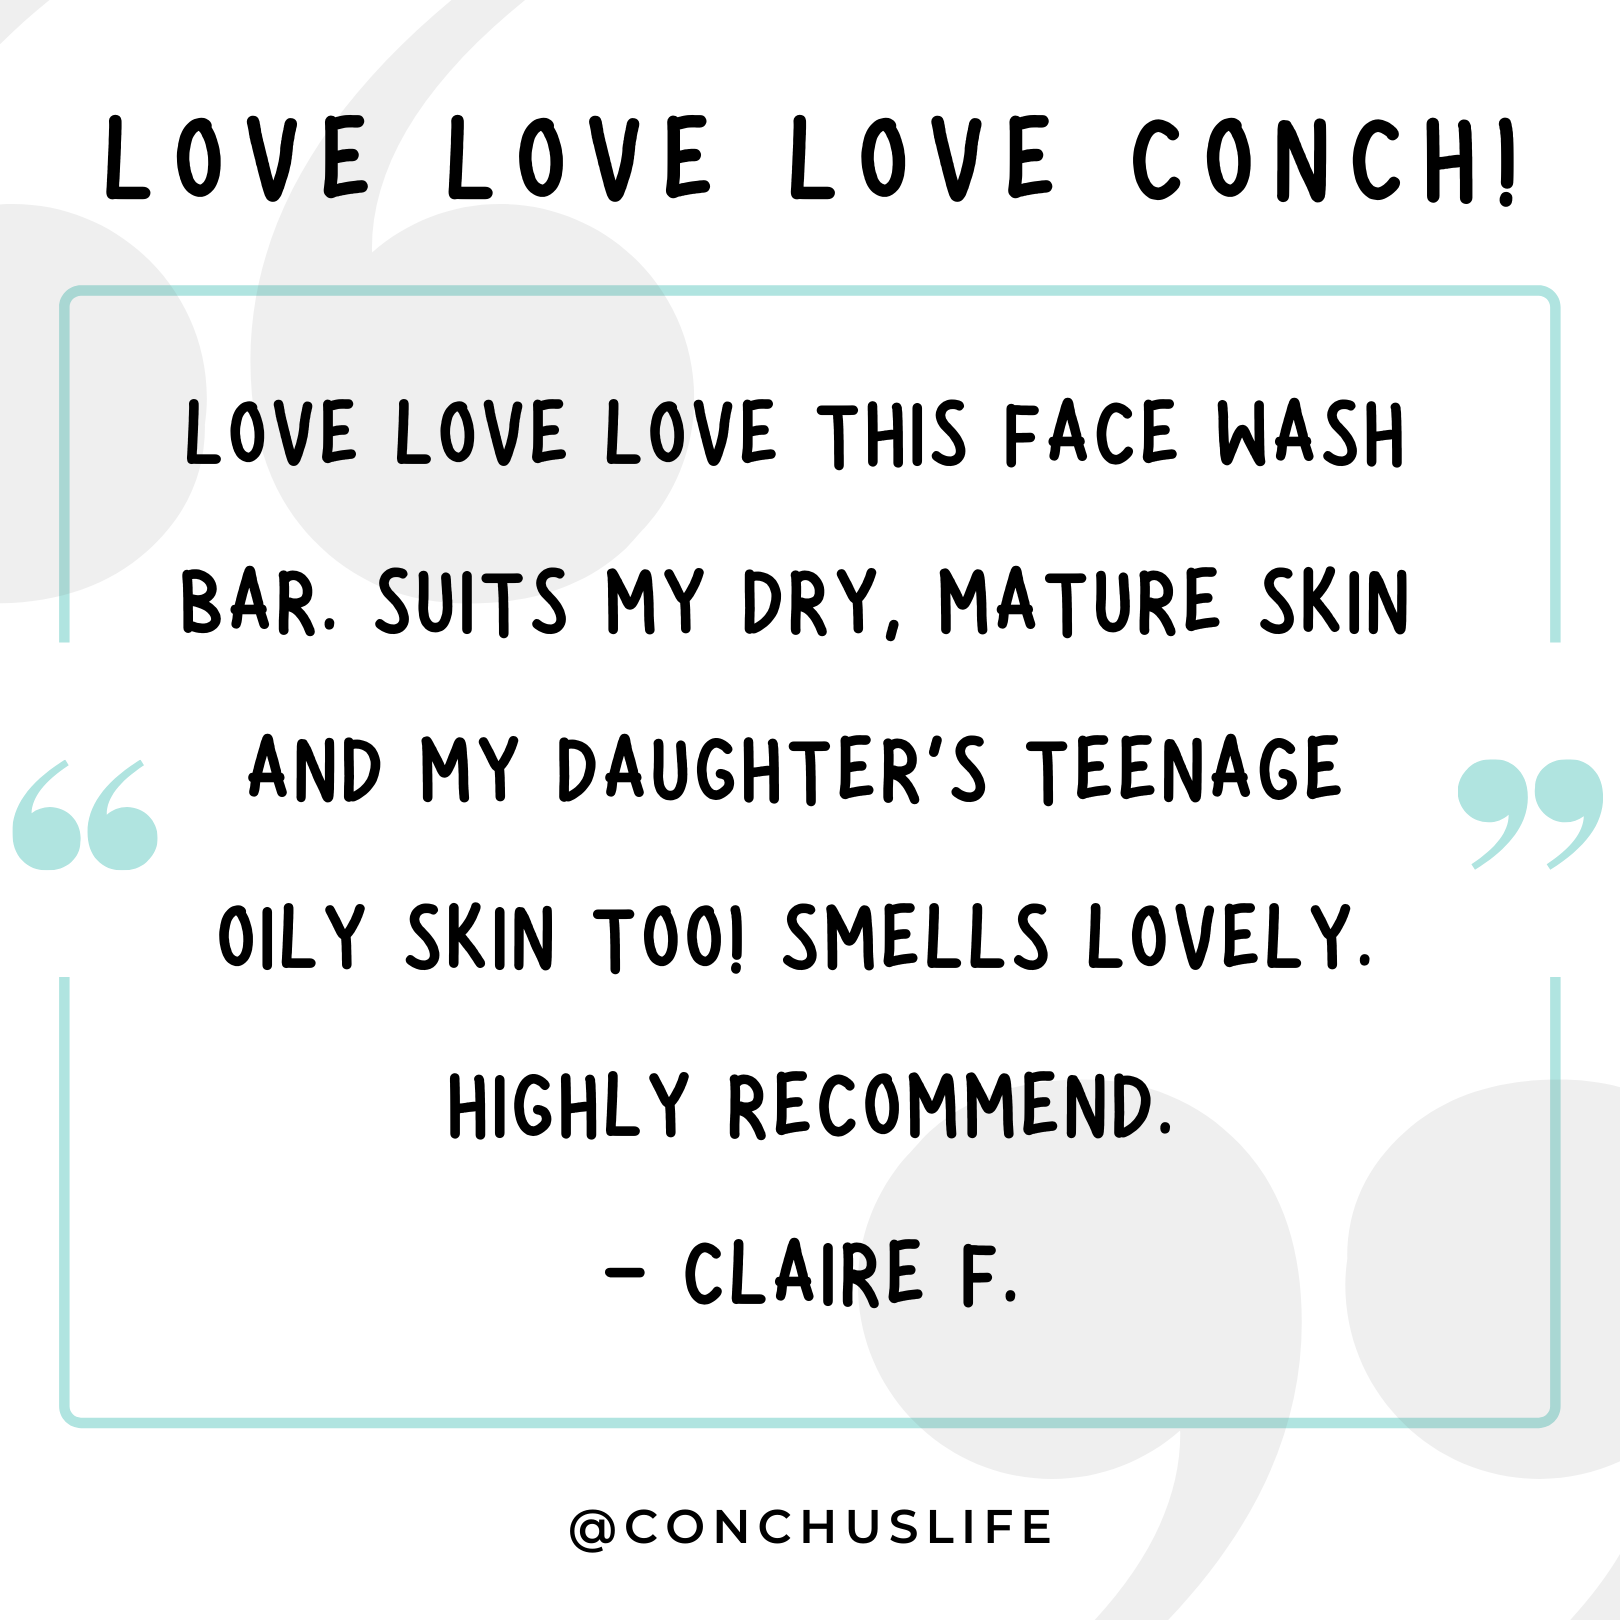 Conch Face Wash Bar